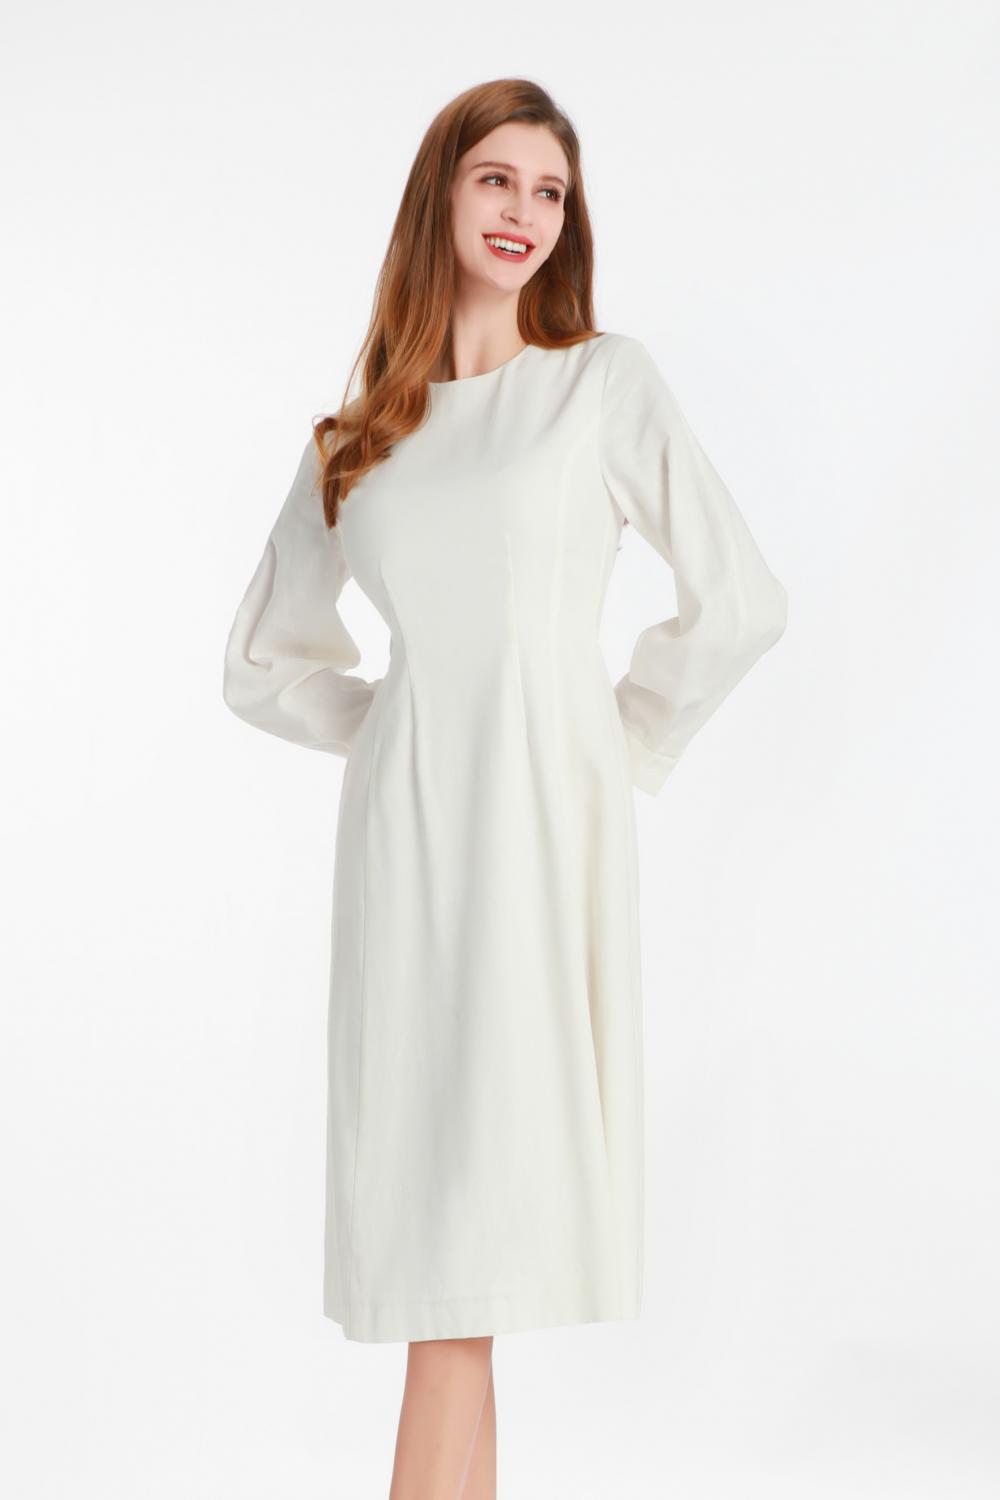 작은 둥근 칼라가있는 흰색 긴팔 드레스